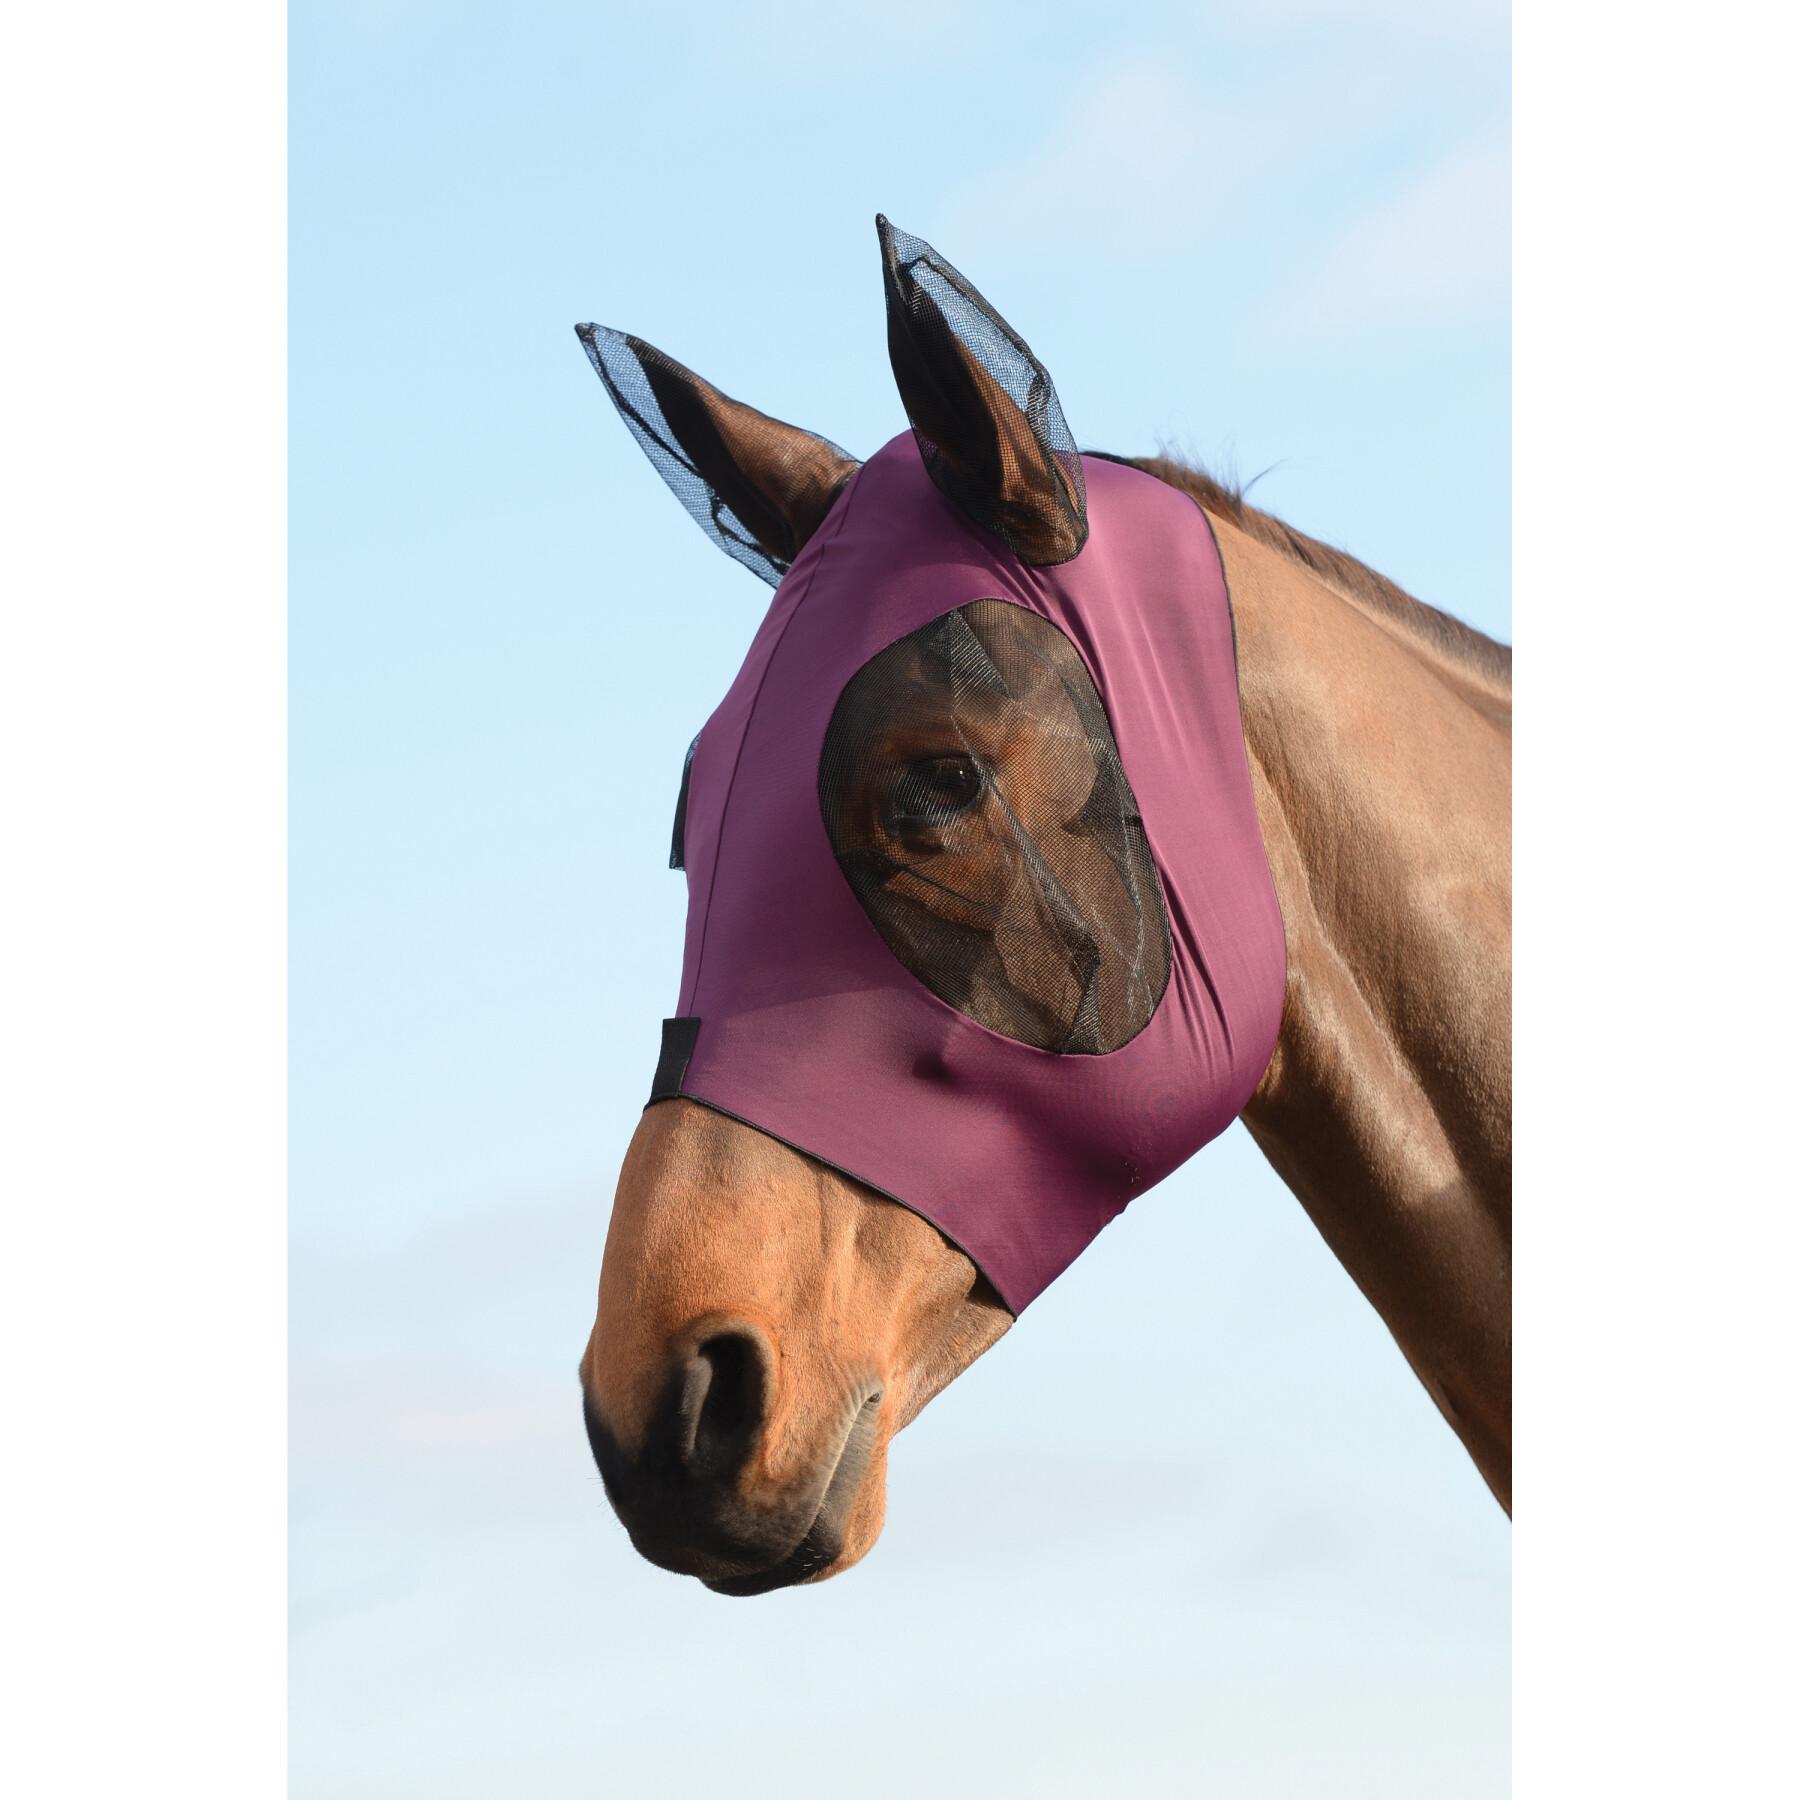 Máscara antimoscas extensible para ojos y orejas del caballo Weatherbeeta Deluxe Bug